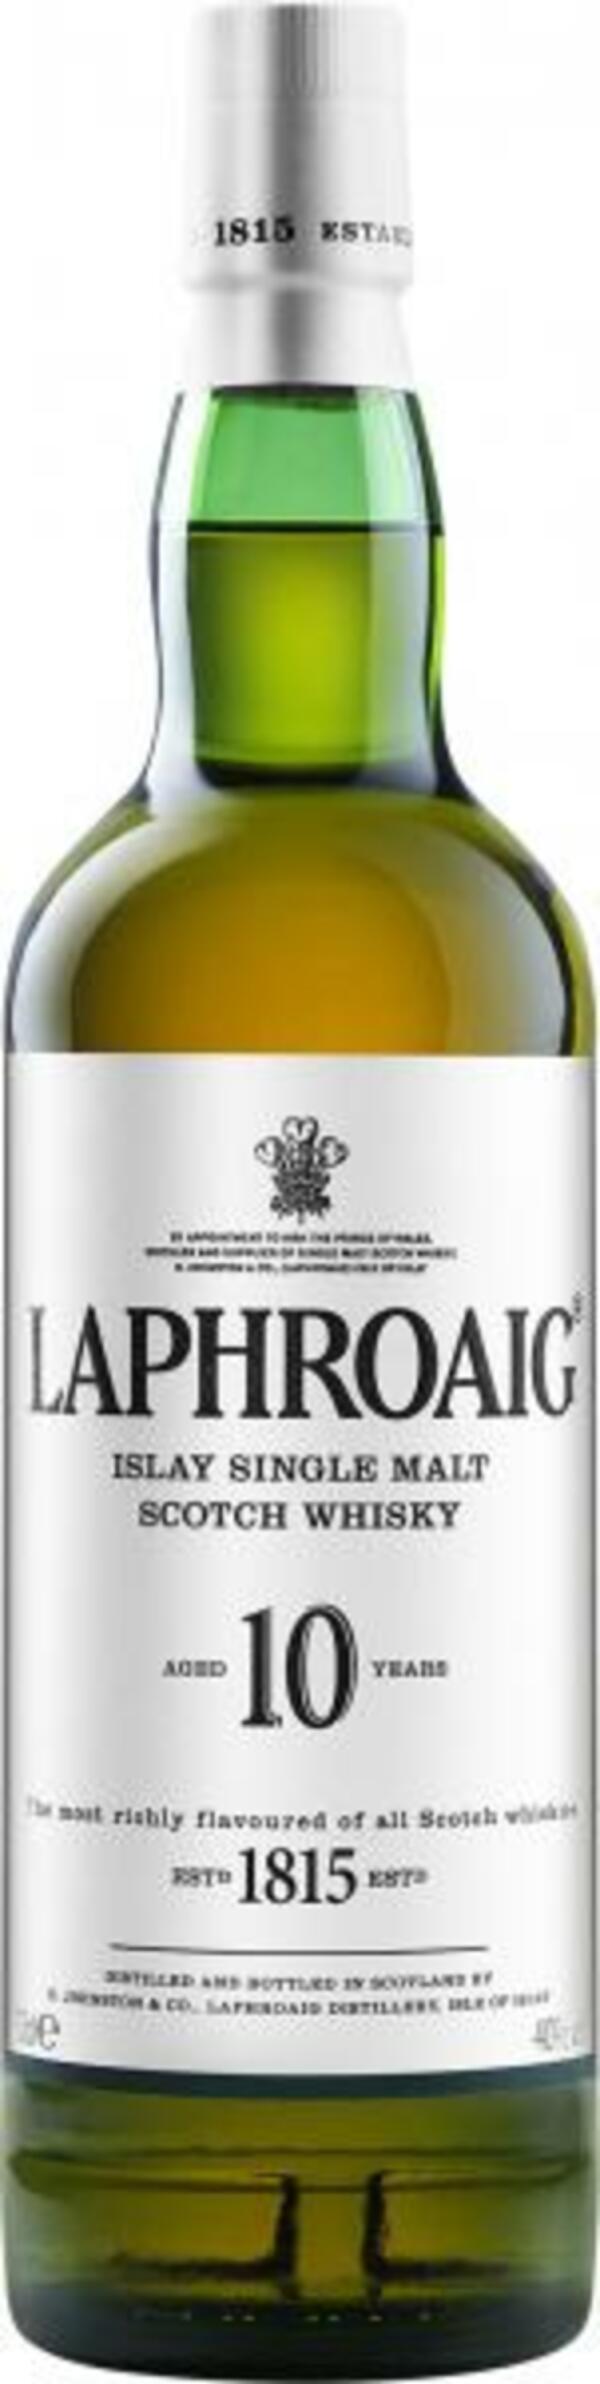 Bild 1 von Laphroaig Islay Single Malt Scotch Whisky 10 years